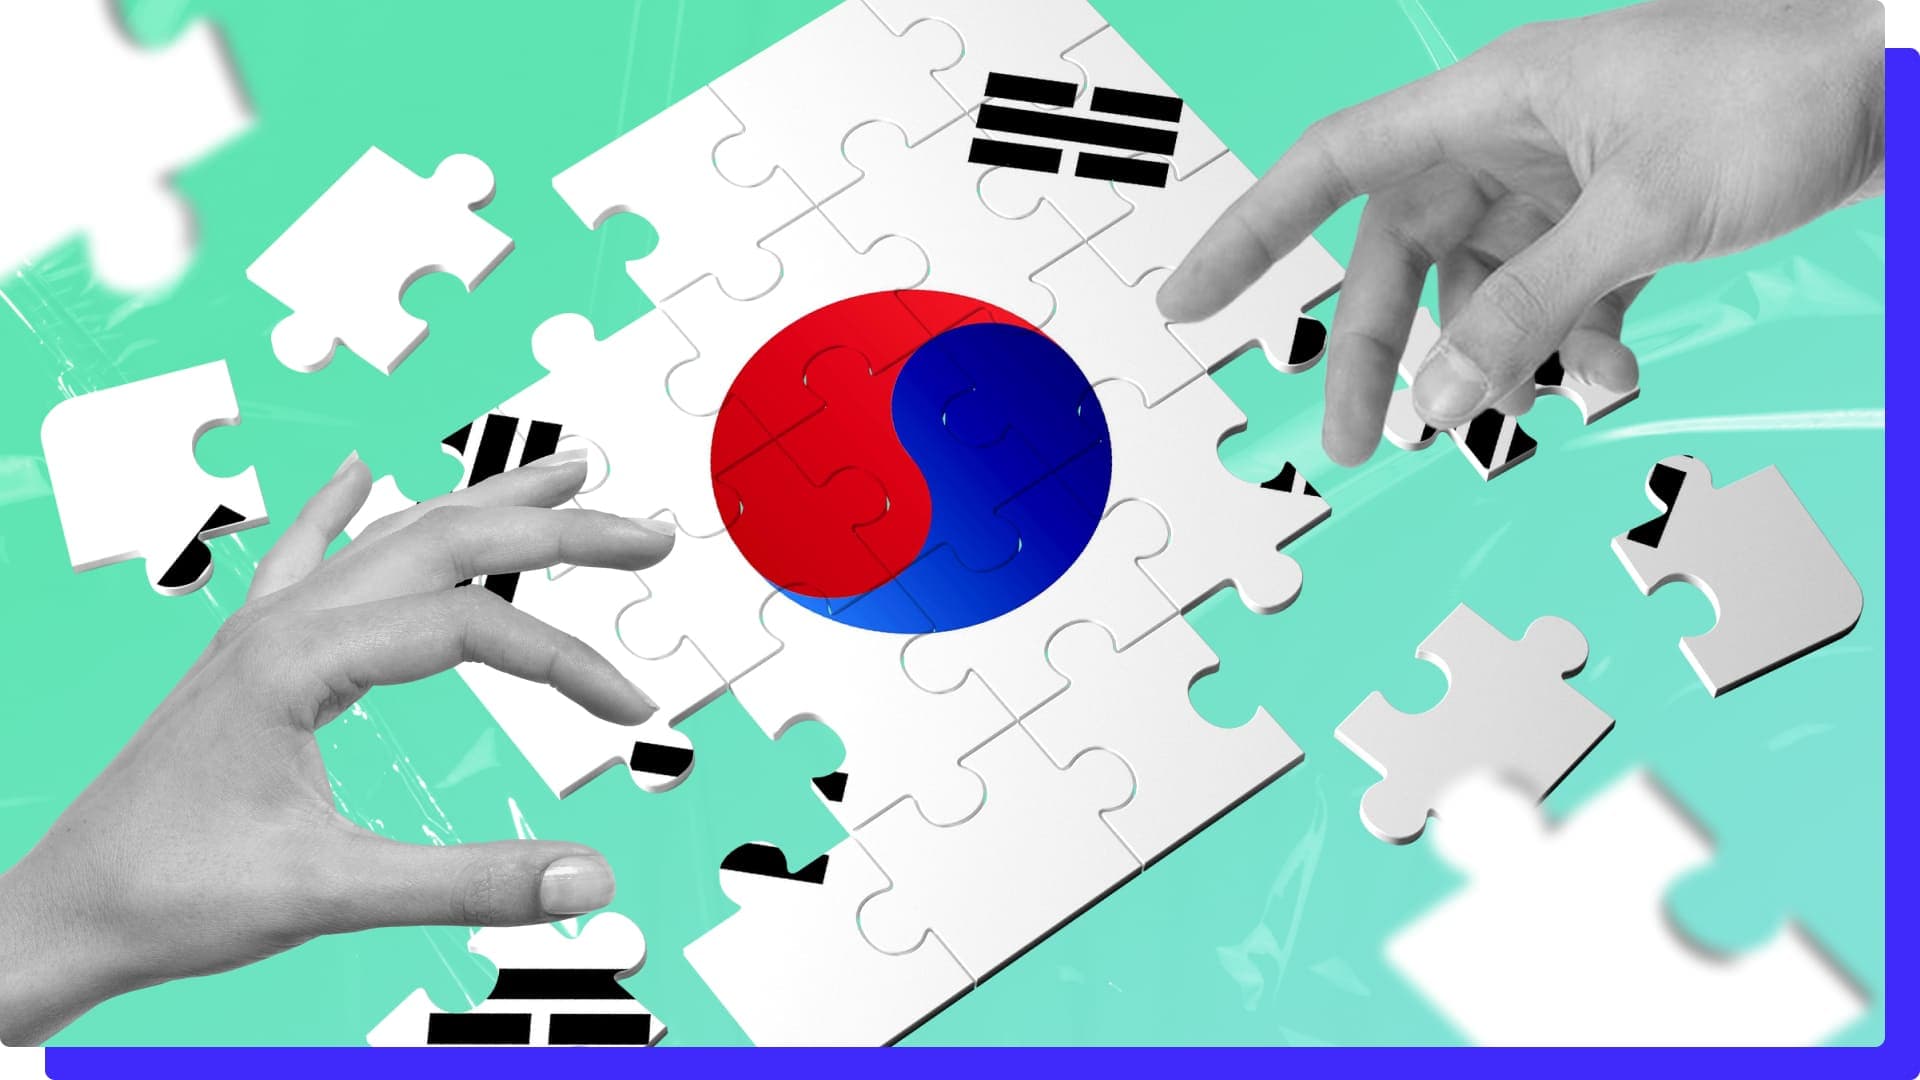 Флаг Южной Кореи, валюта, гимн и другие символы — основные факты о стране